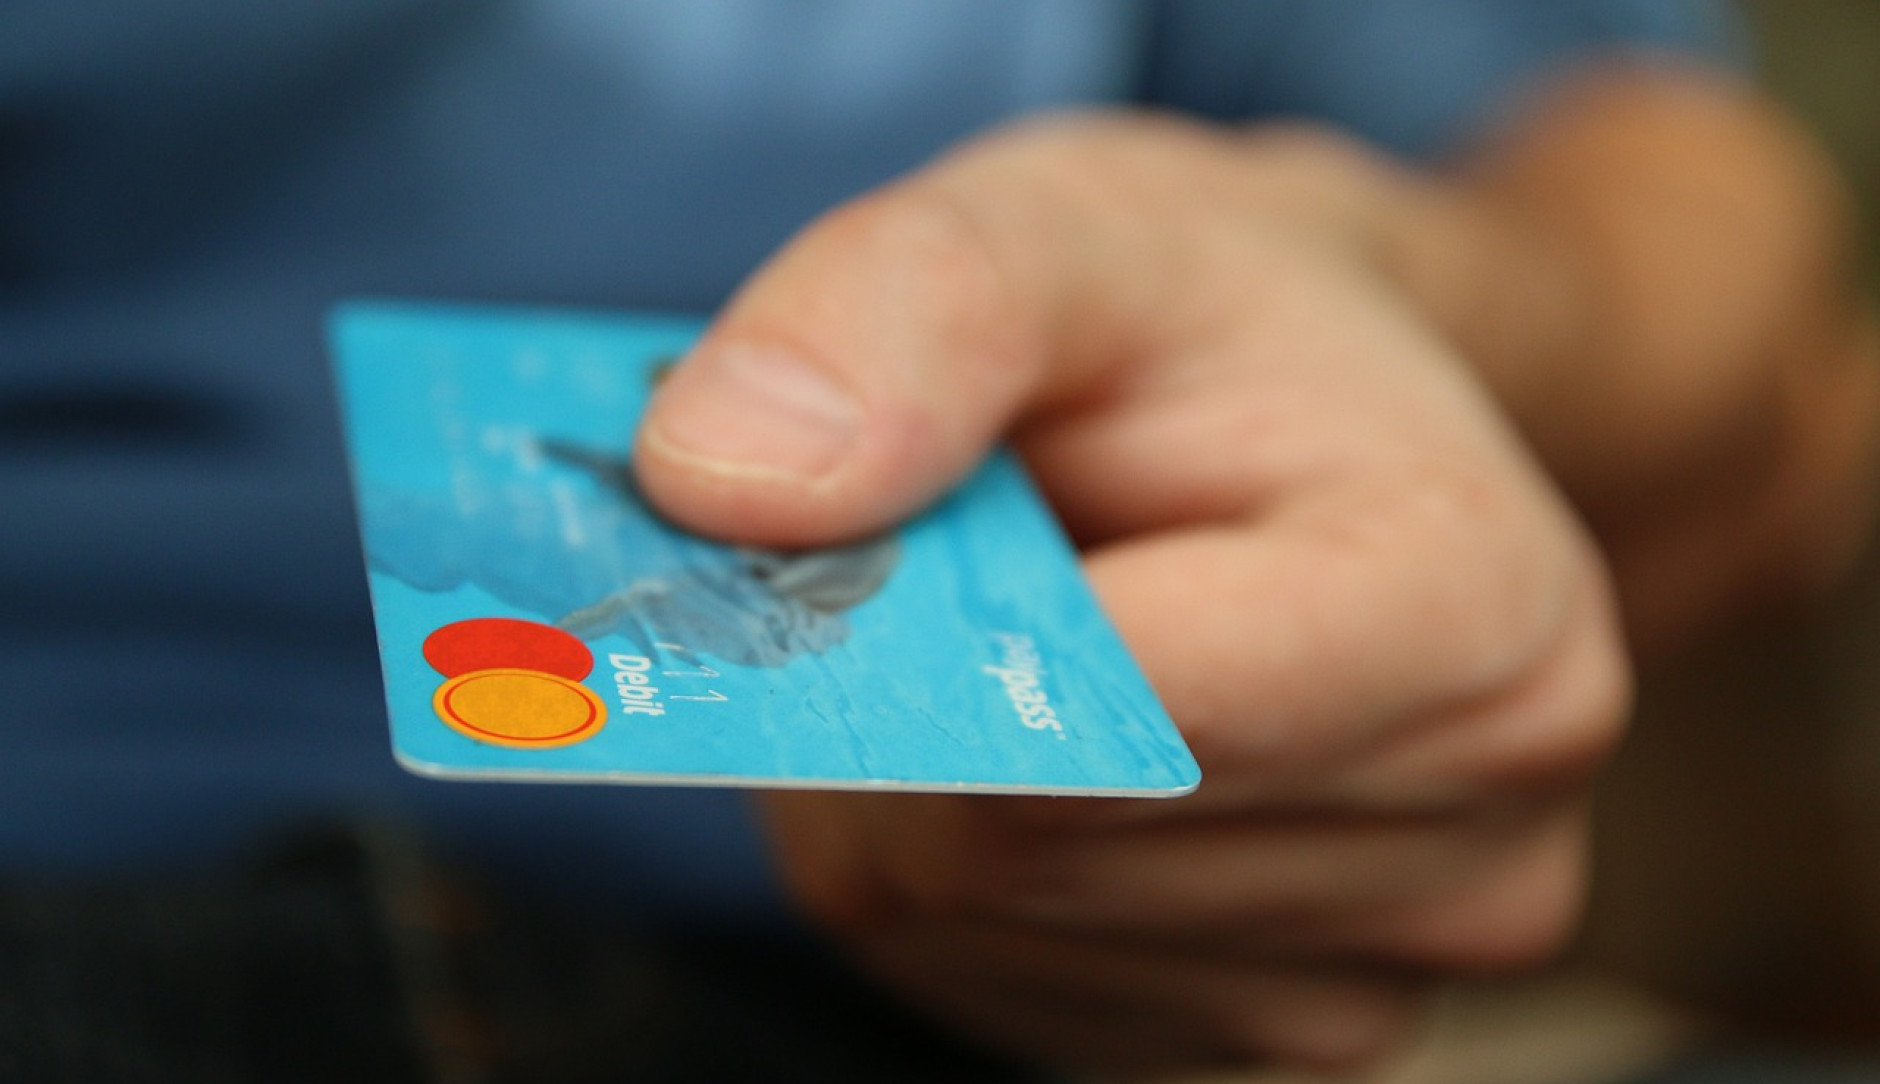 Bild einer türkis-blauen Kreditkarte welche in der Hand eines Menschen gehalten wird.